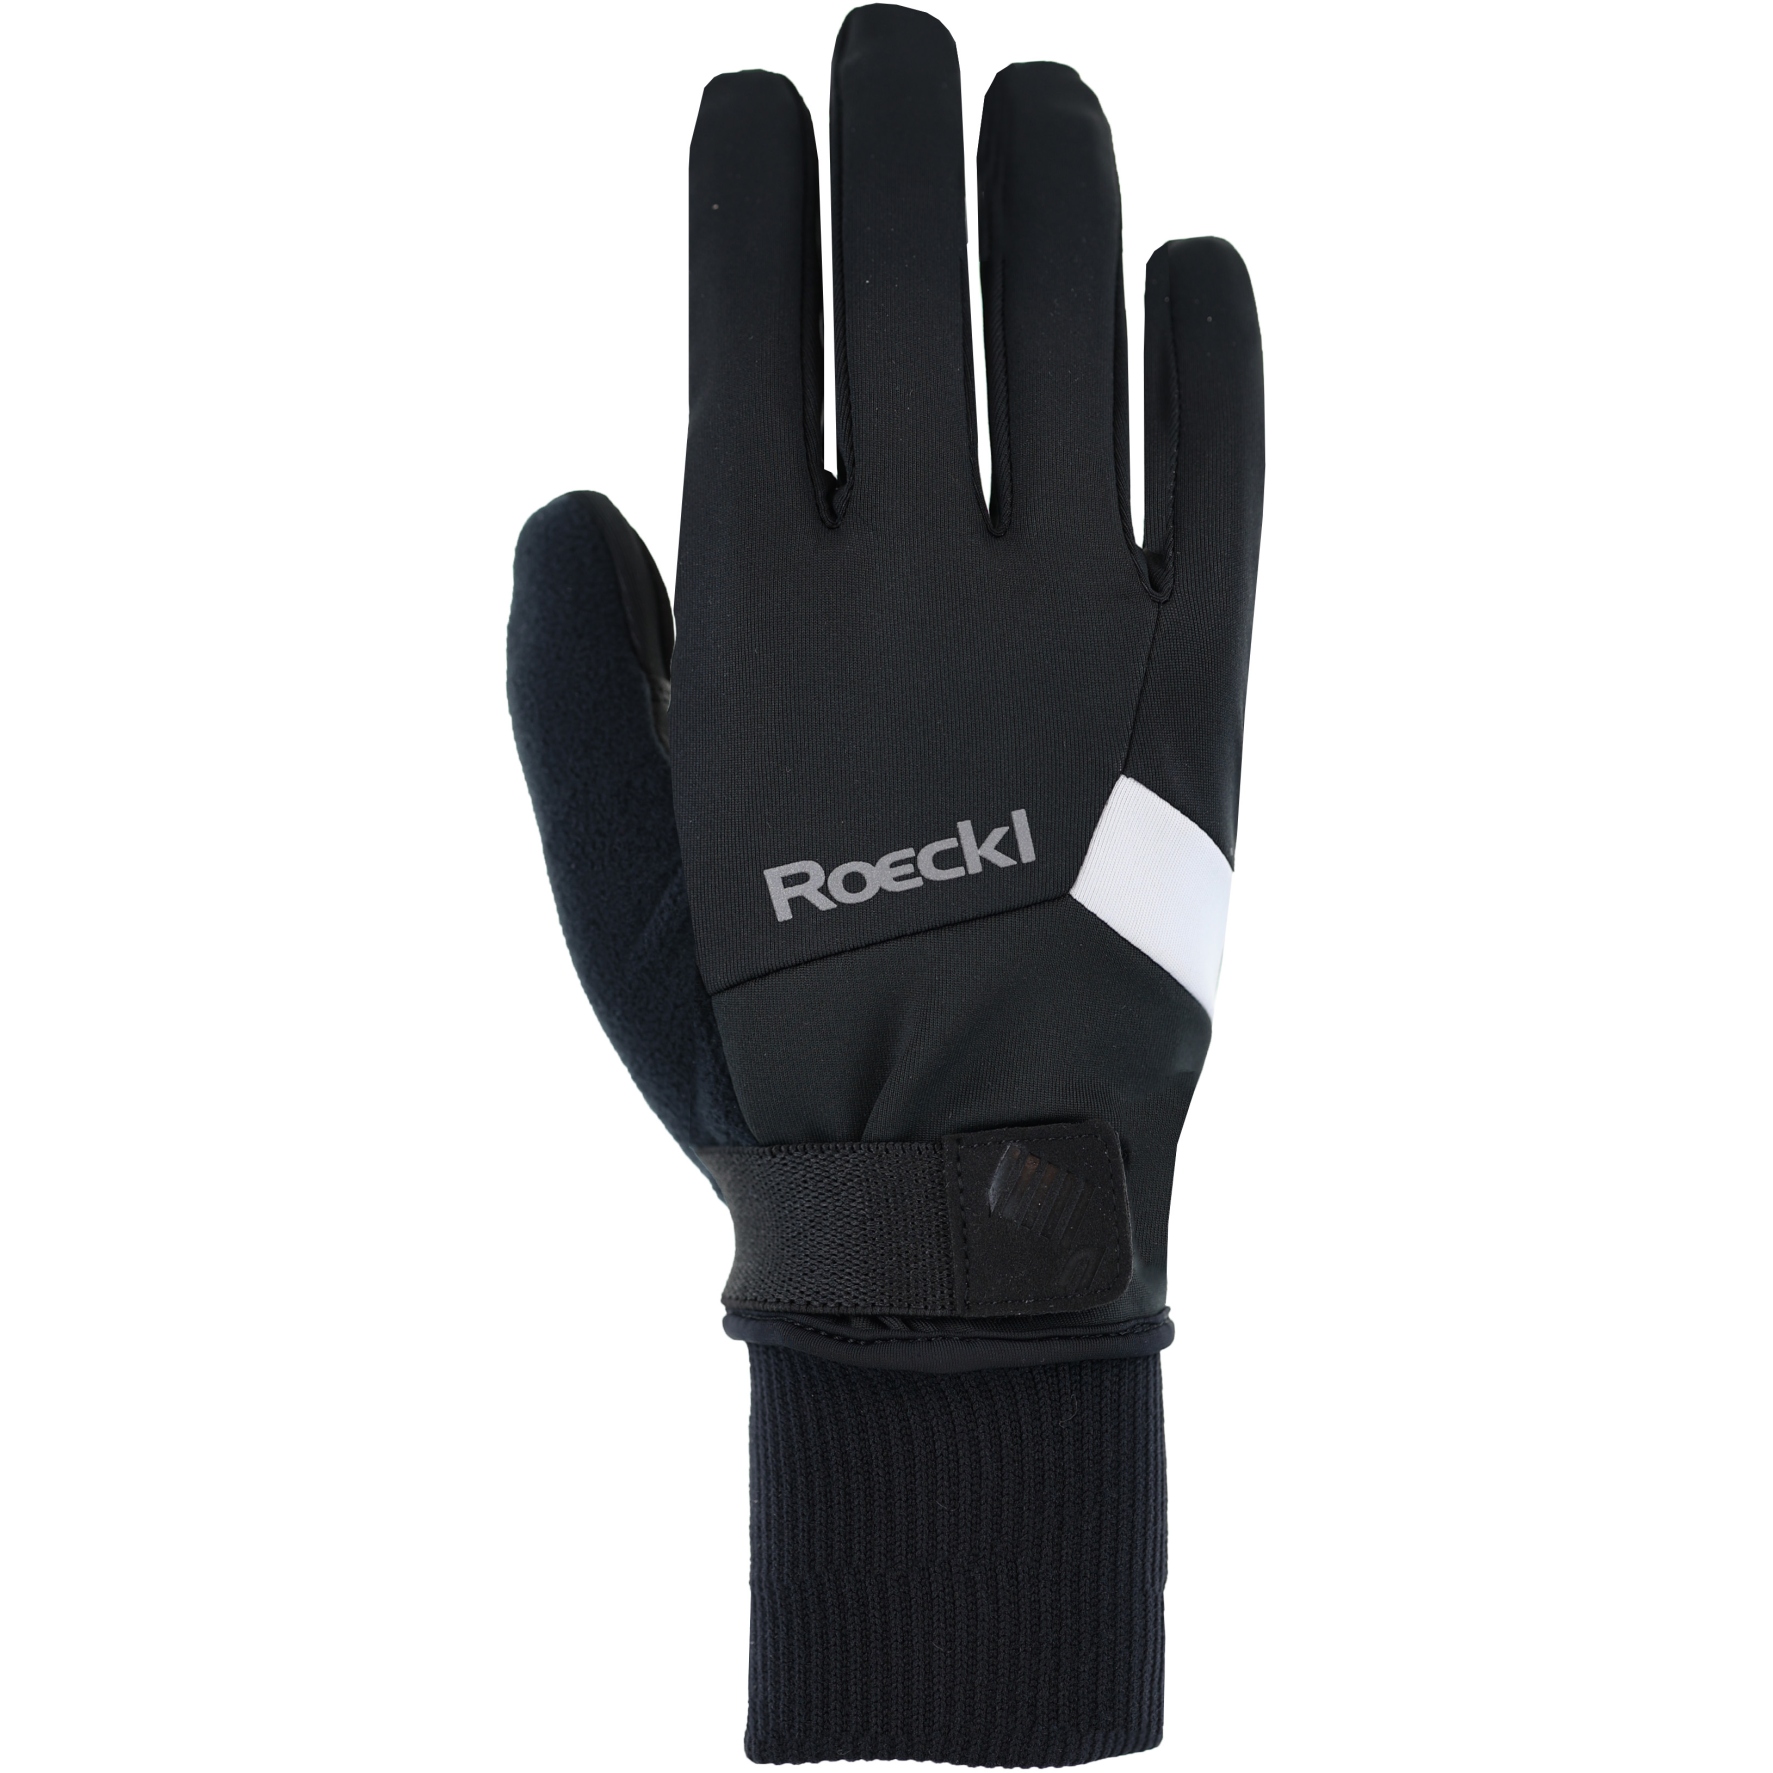 Productfoto van Roeckl Sports Lappi 2 Winterhandschoenen - zwart/wit 9100